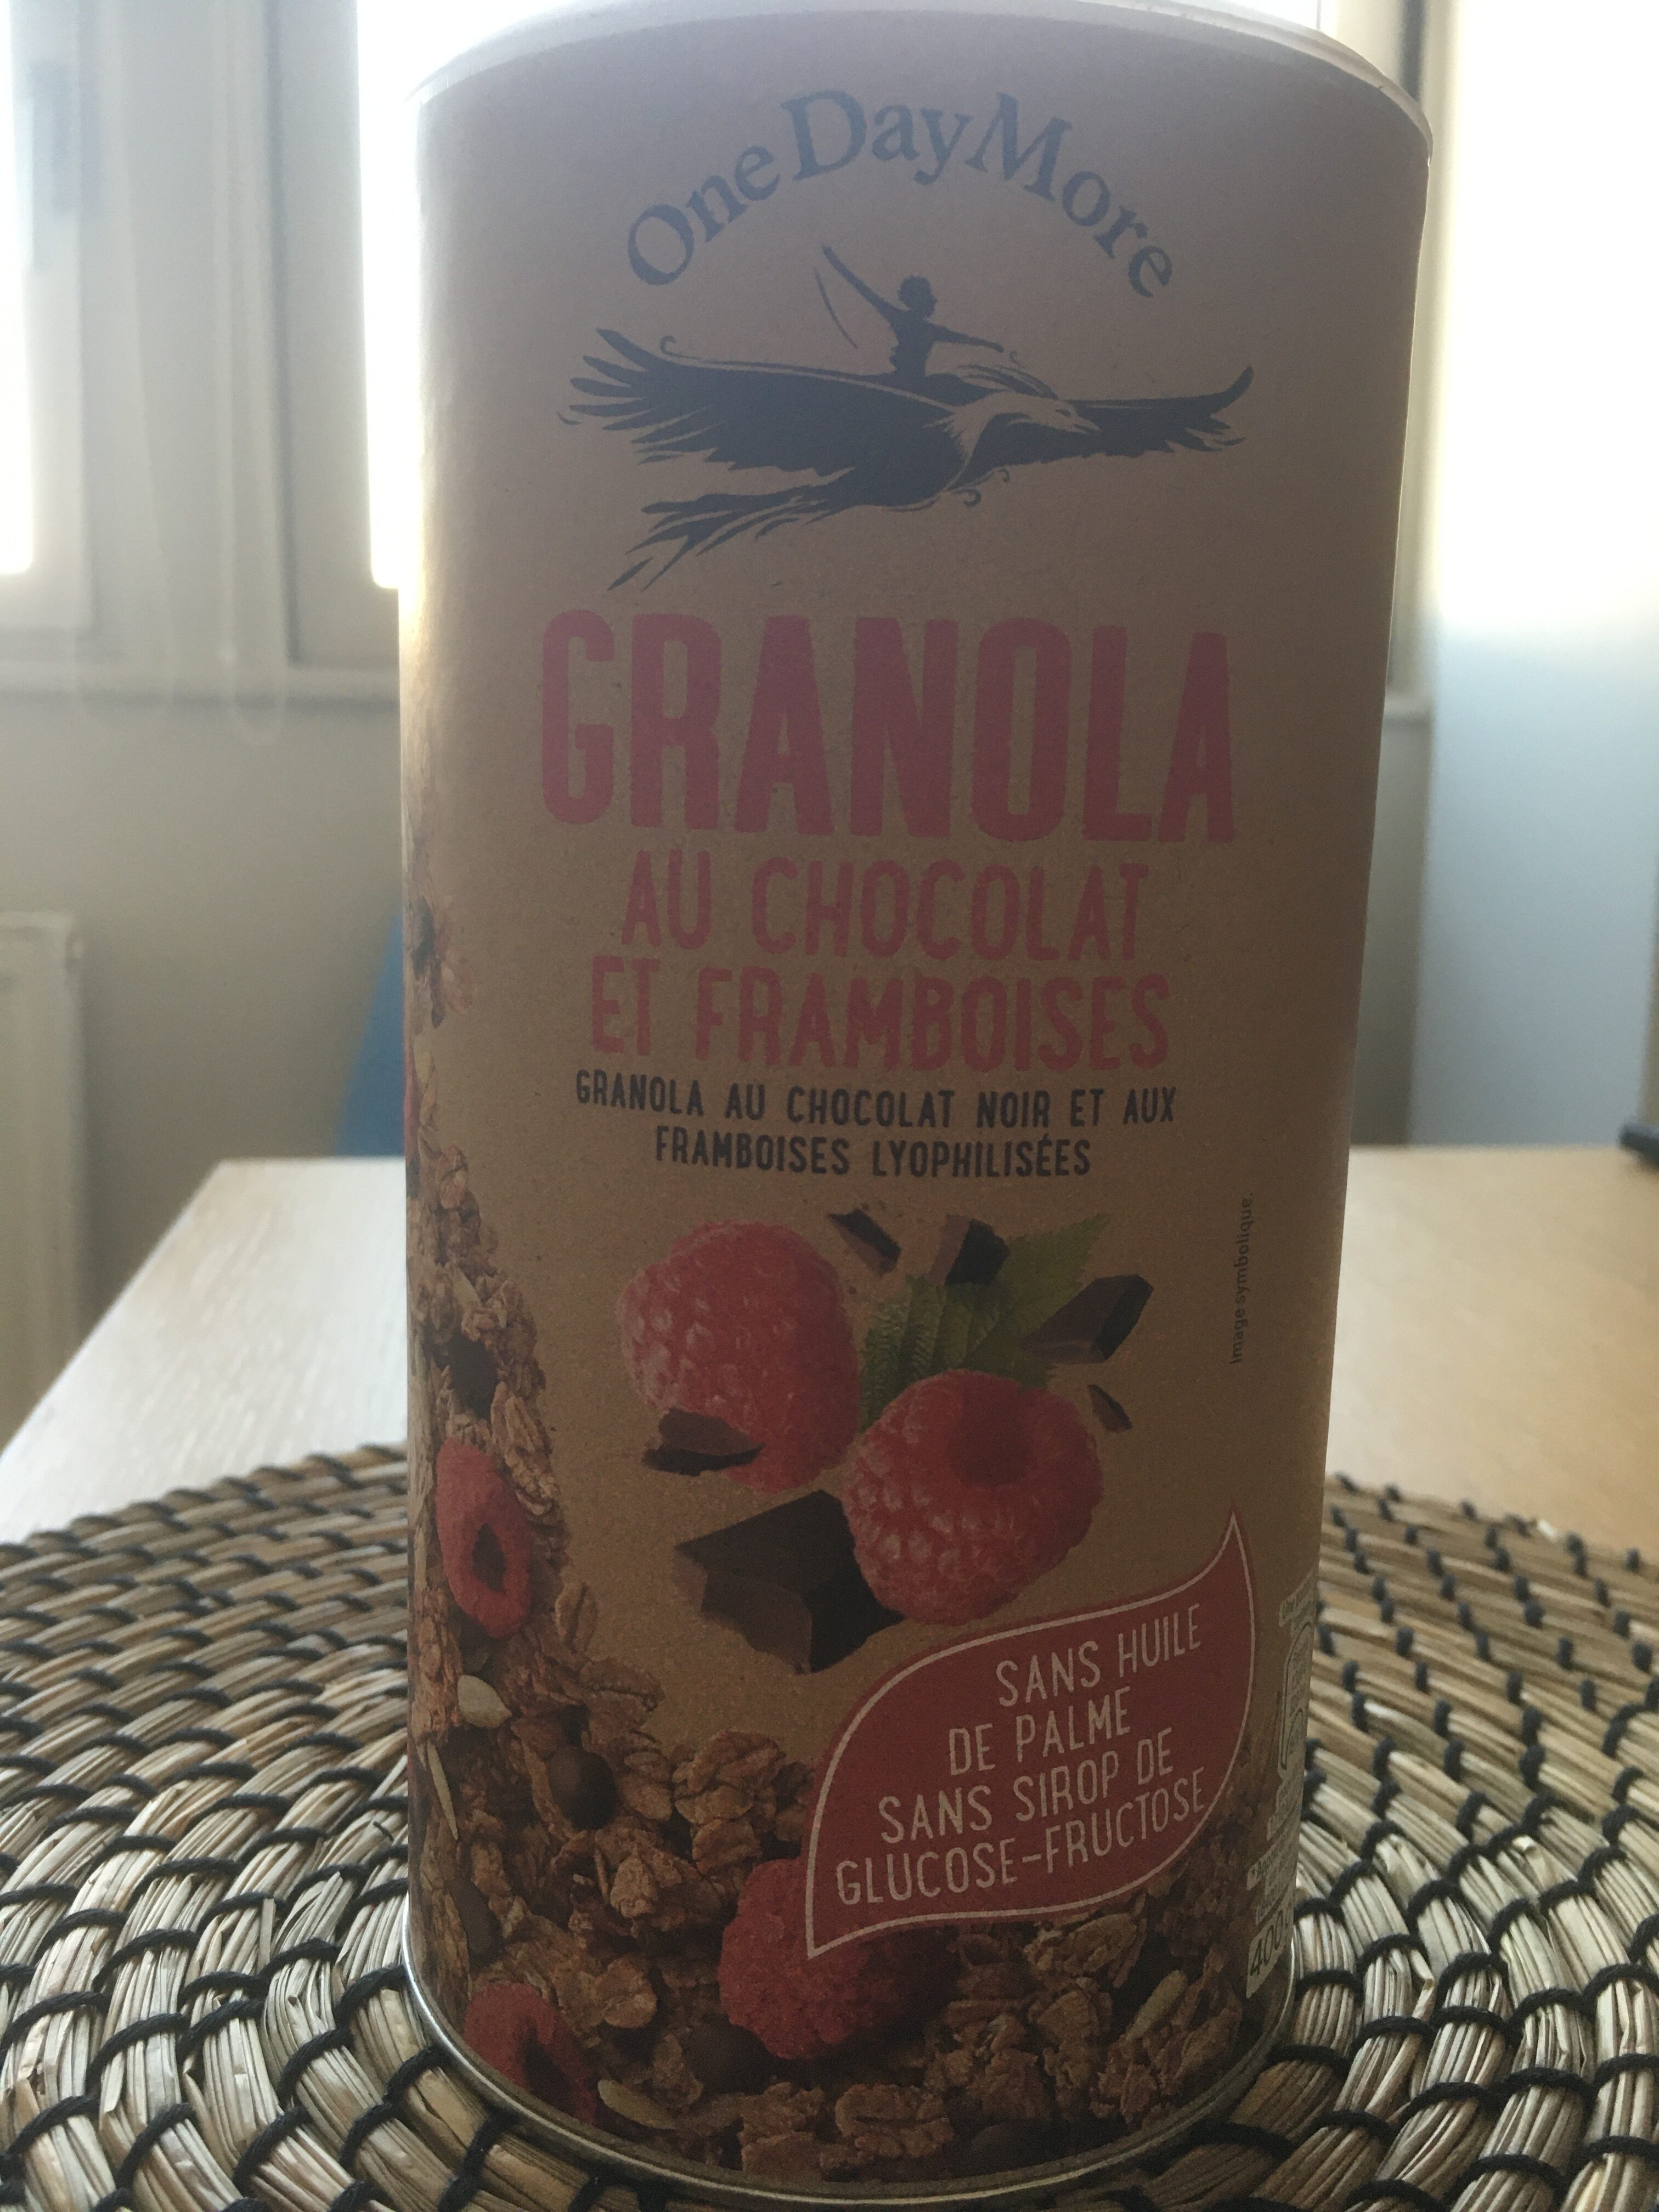 Granola au chocolat et framboises - Product - fr